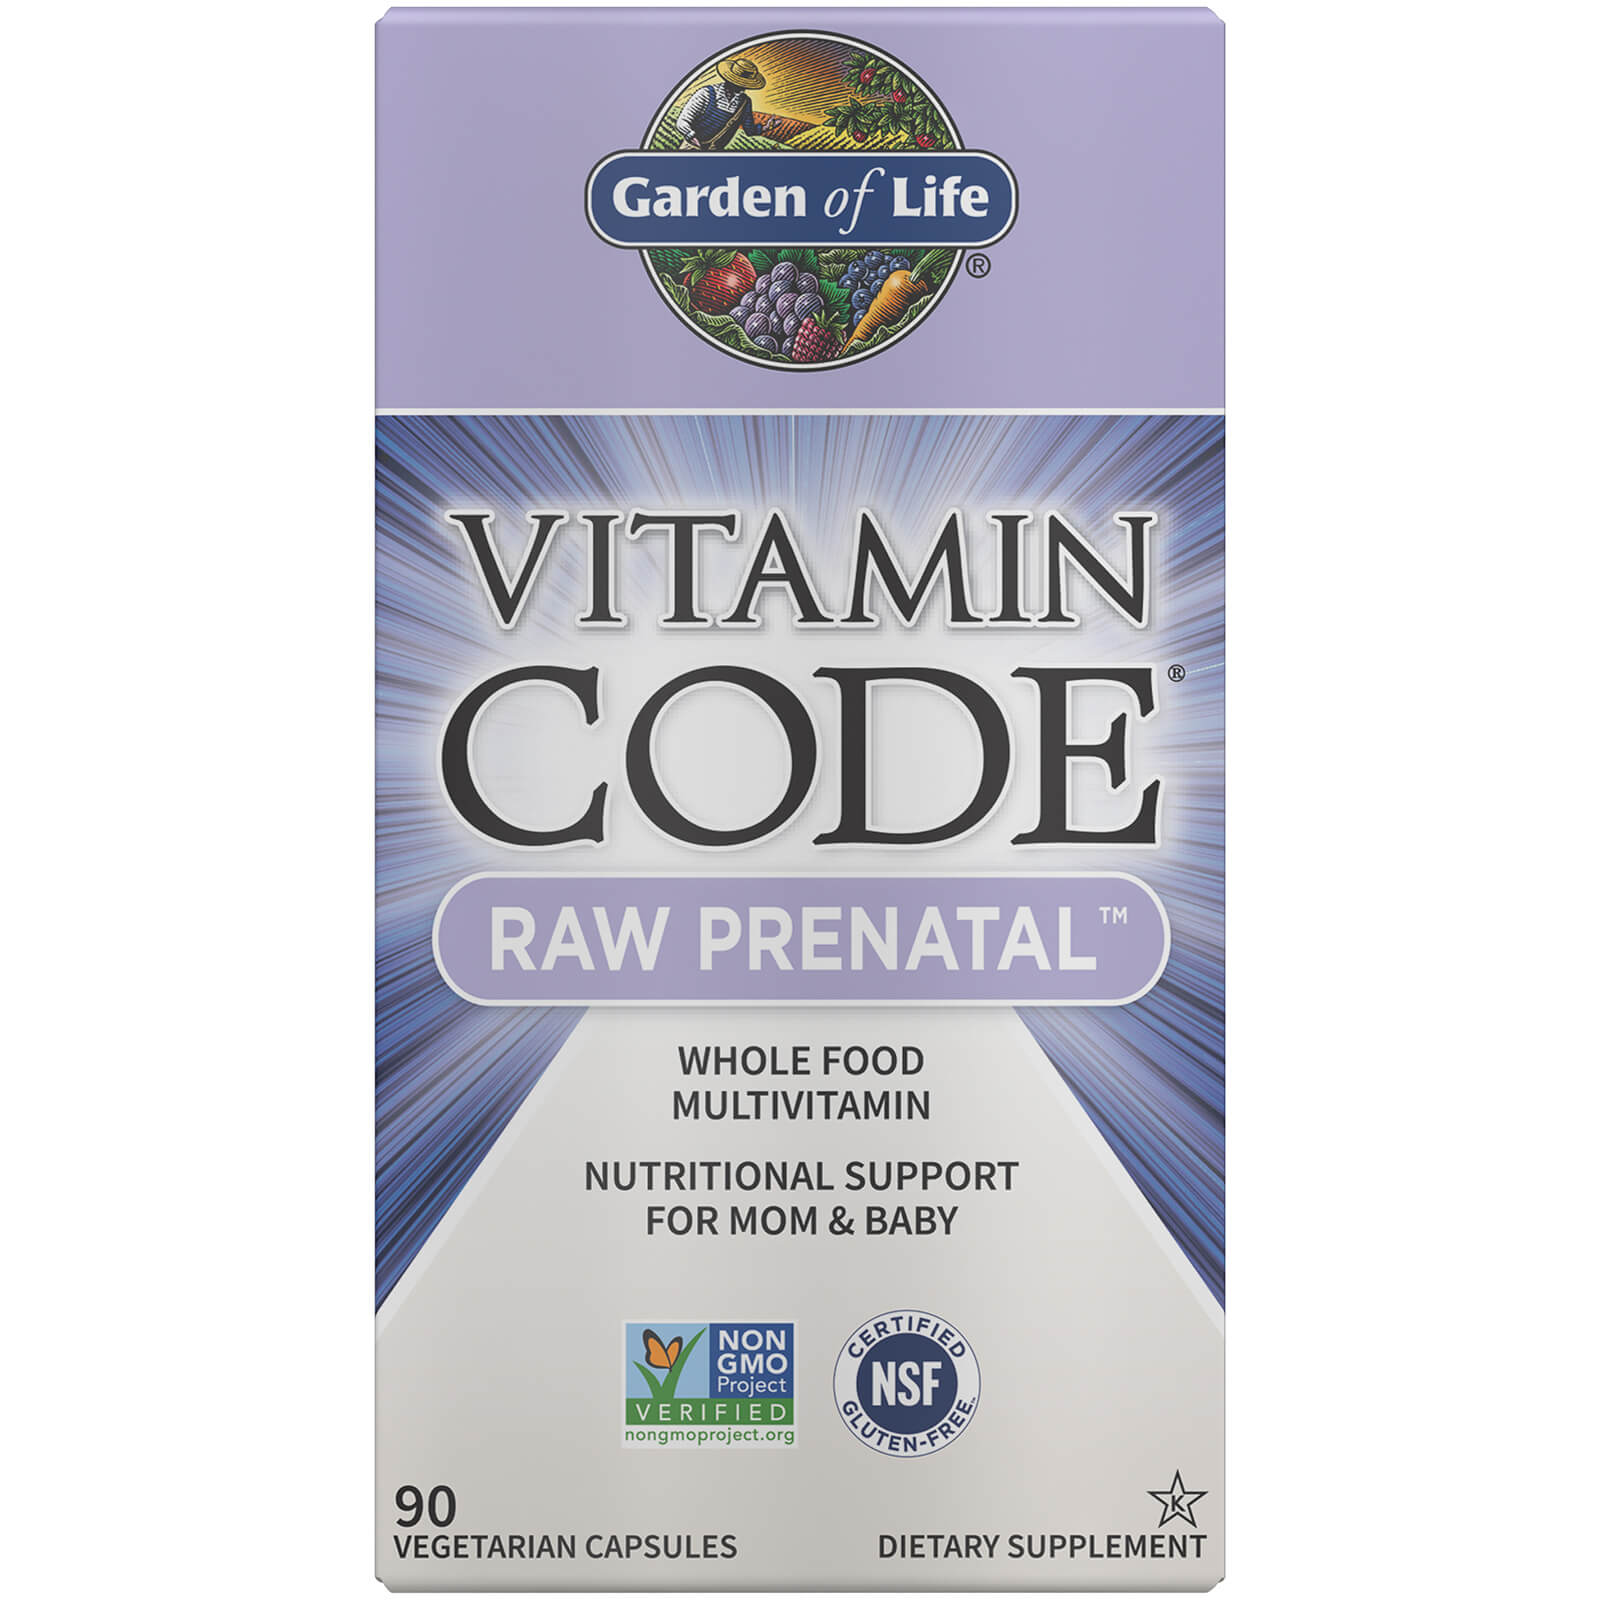 Vitamin Code Raw Prenatal - 90 Capsules